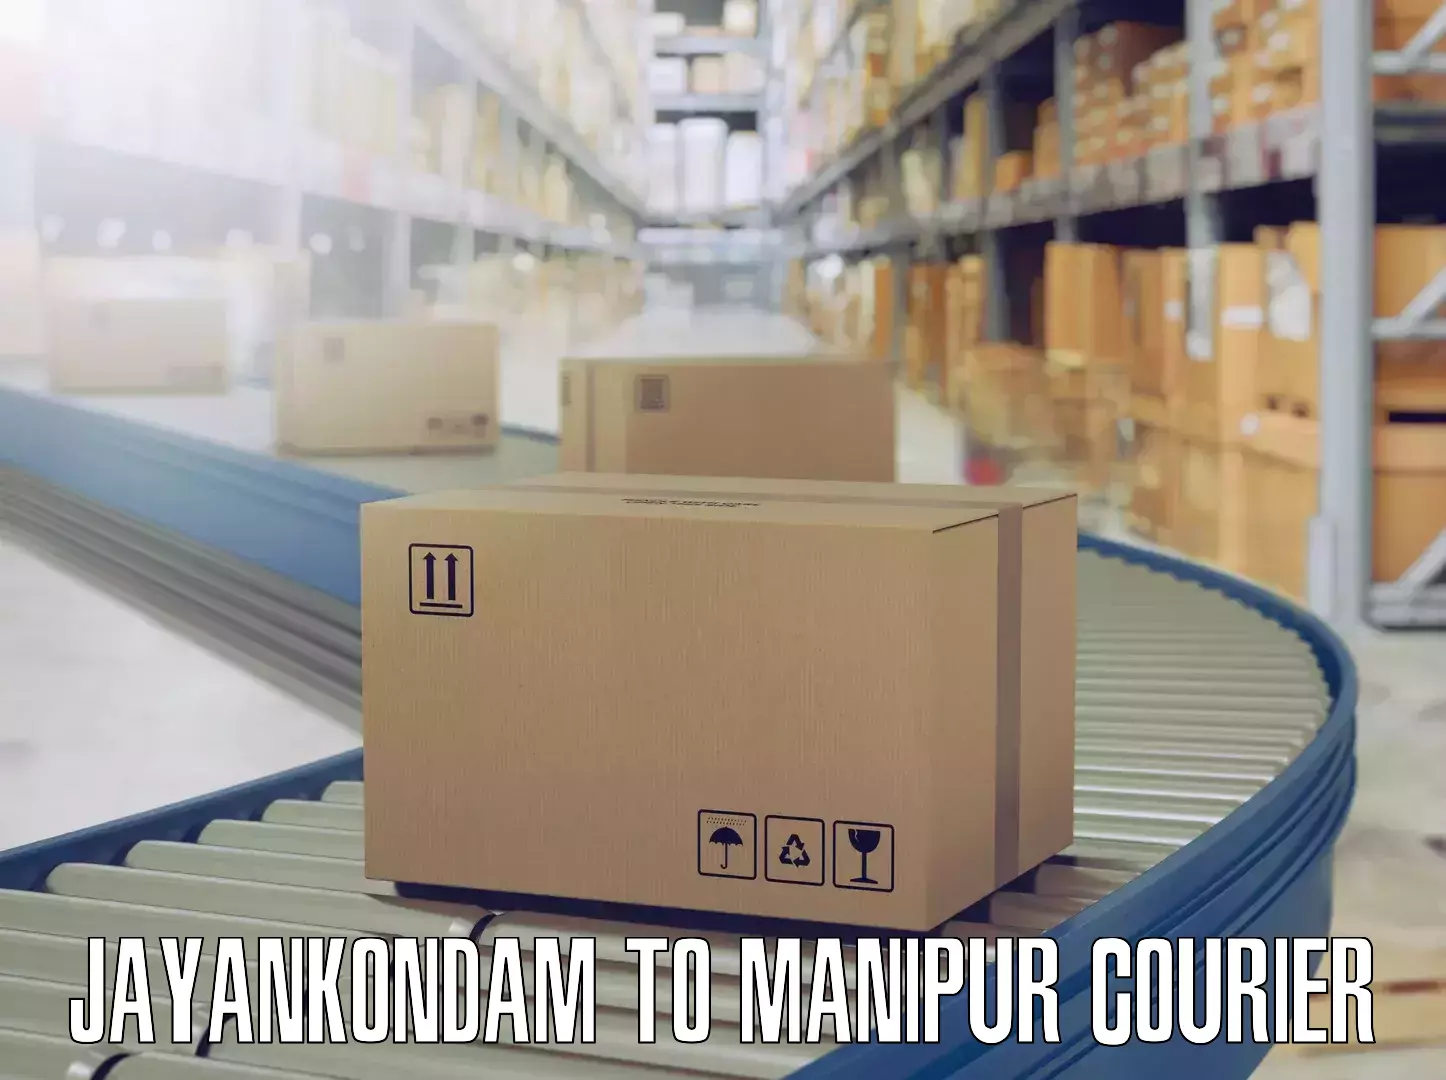 Professional movers Jayankondam to Manipur